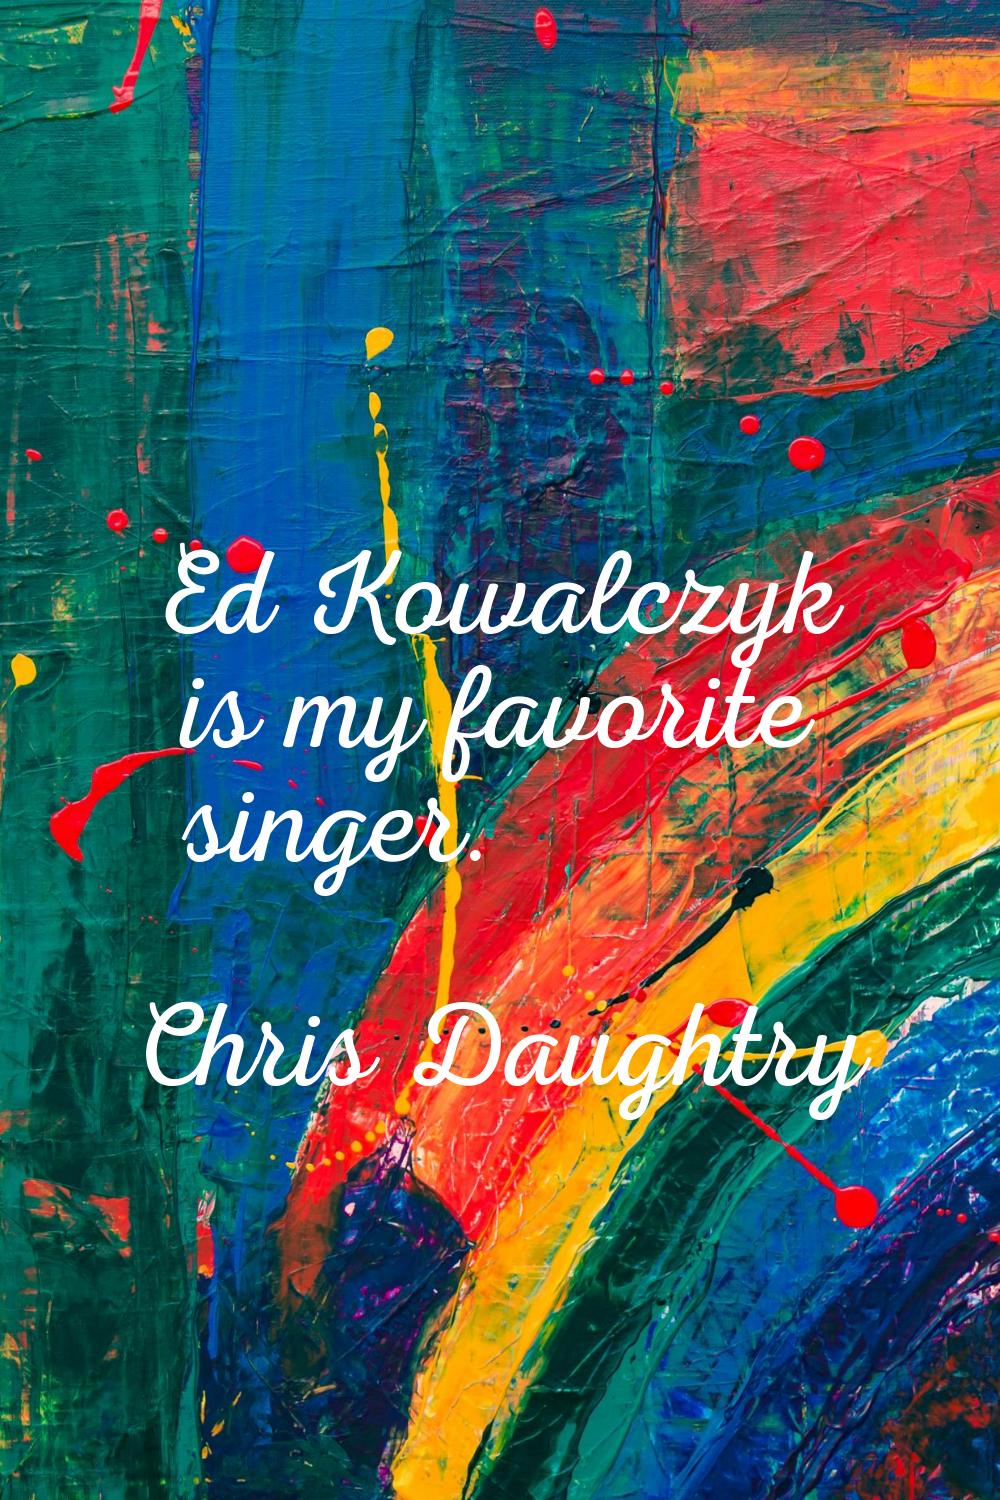 Ed Kowalczyk is my favorite singer.